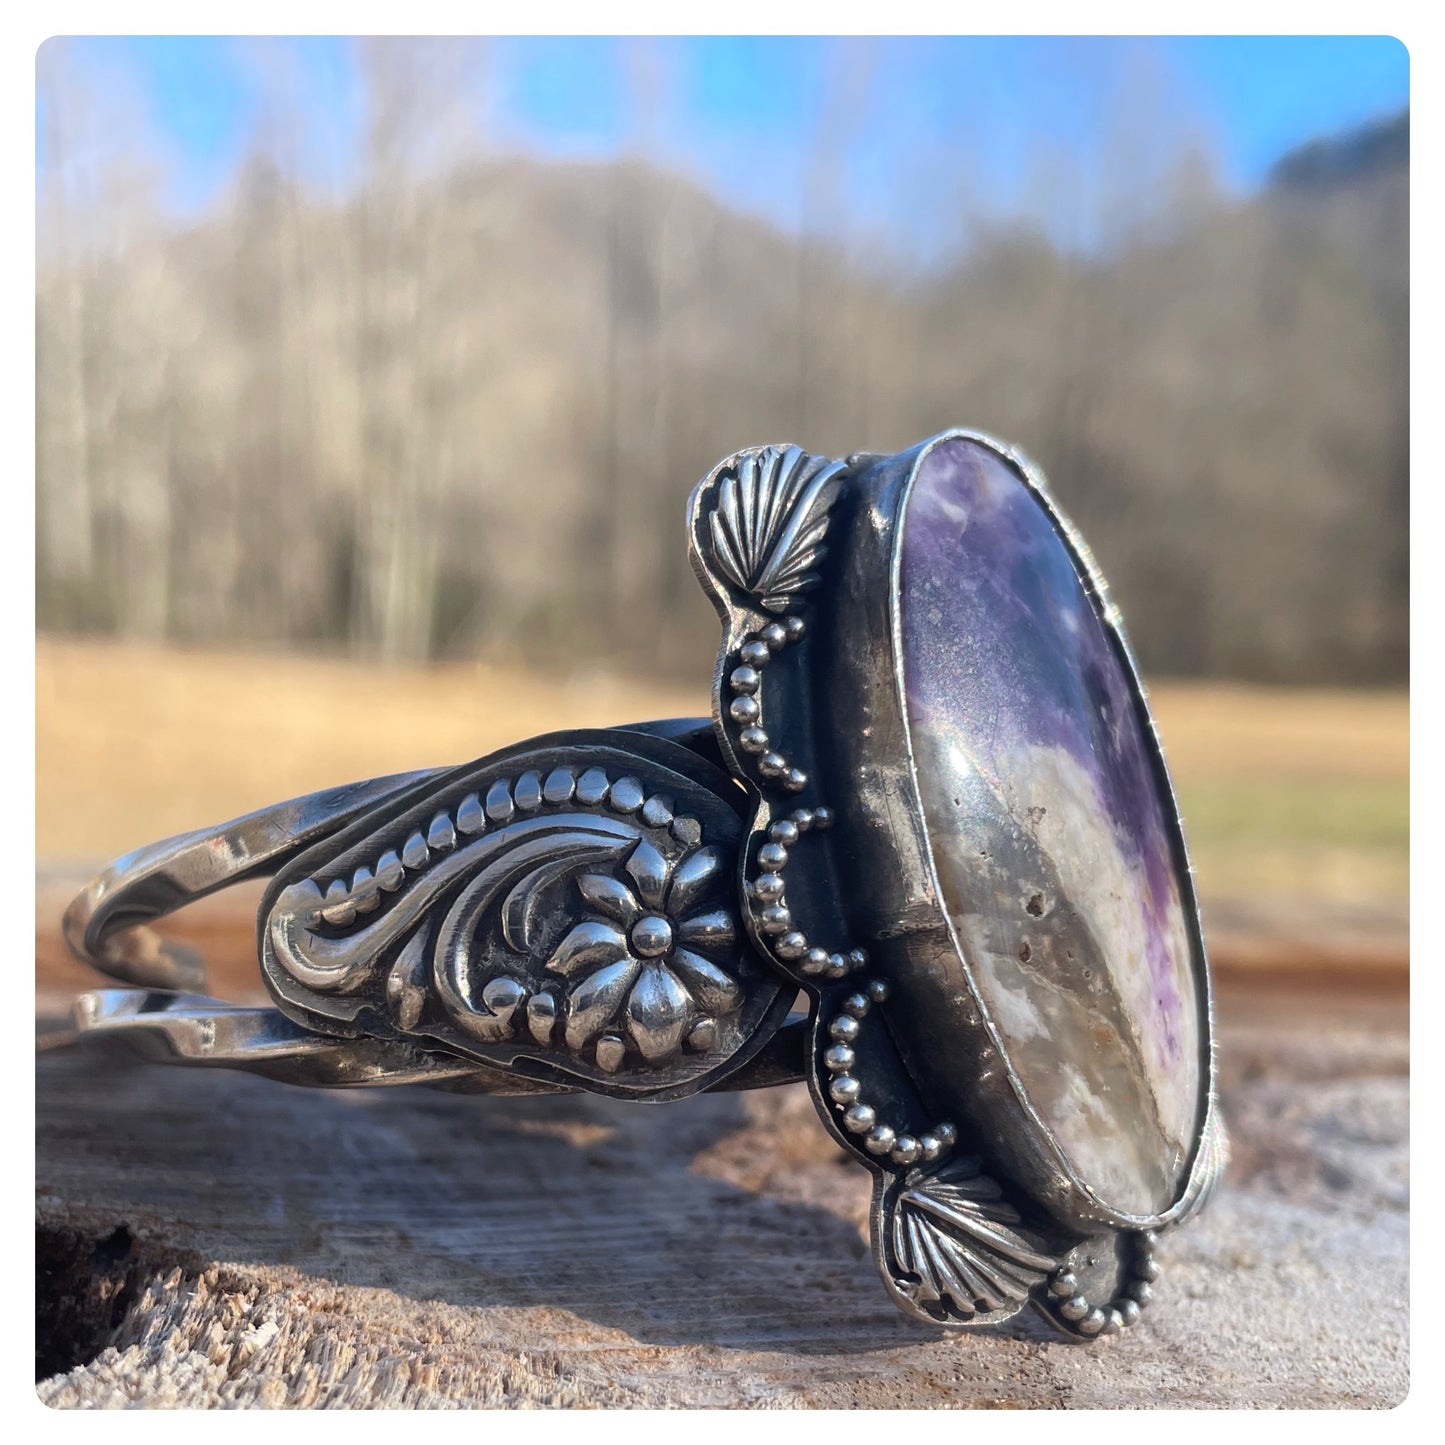 Purple Mexican Opal Cuff Bracelet